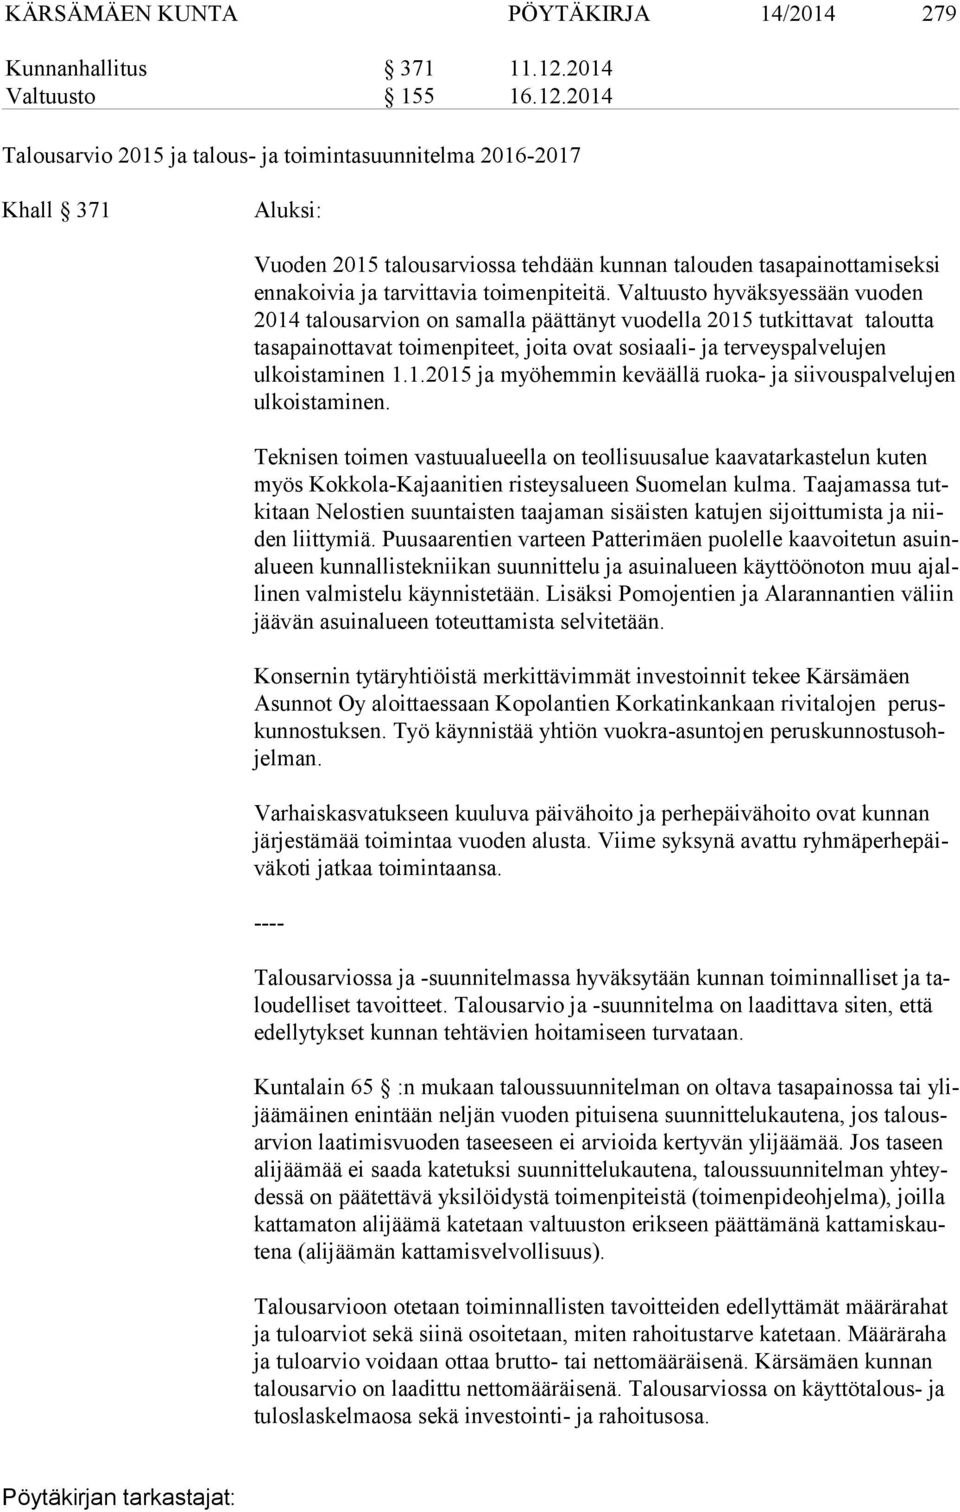 2014 Talousarvio 2015 ja talous- ja toimintasuunnitelma 2016-2017 Khall 371 Aluksi: Vuoden 2015 talousarviossa tehdään kunnan talouden tasapainottamiseksi en na koi via ja tarvittavia toimenpiteitä.